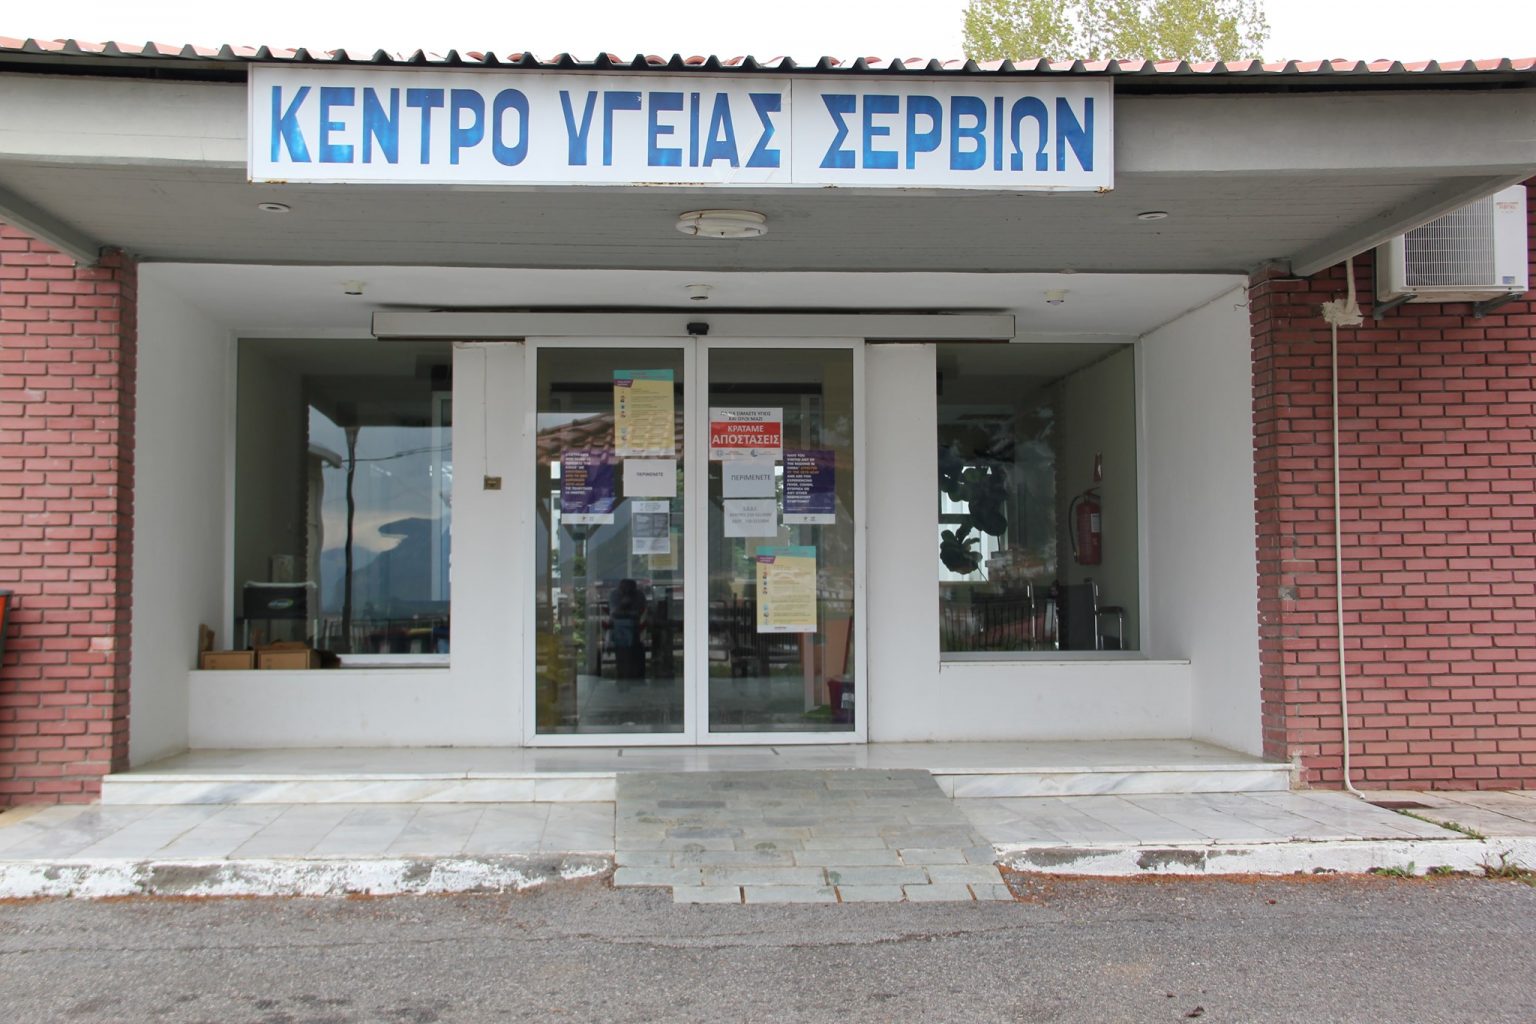 Από τα μέσα της επόμενης εβδομάδας ξεκινά η λειτουργία του Κέντρου Υγείας Σερβίων ως εμβολιαστικού κέντρου